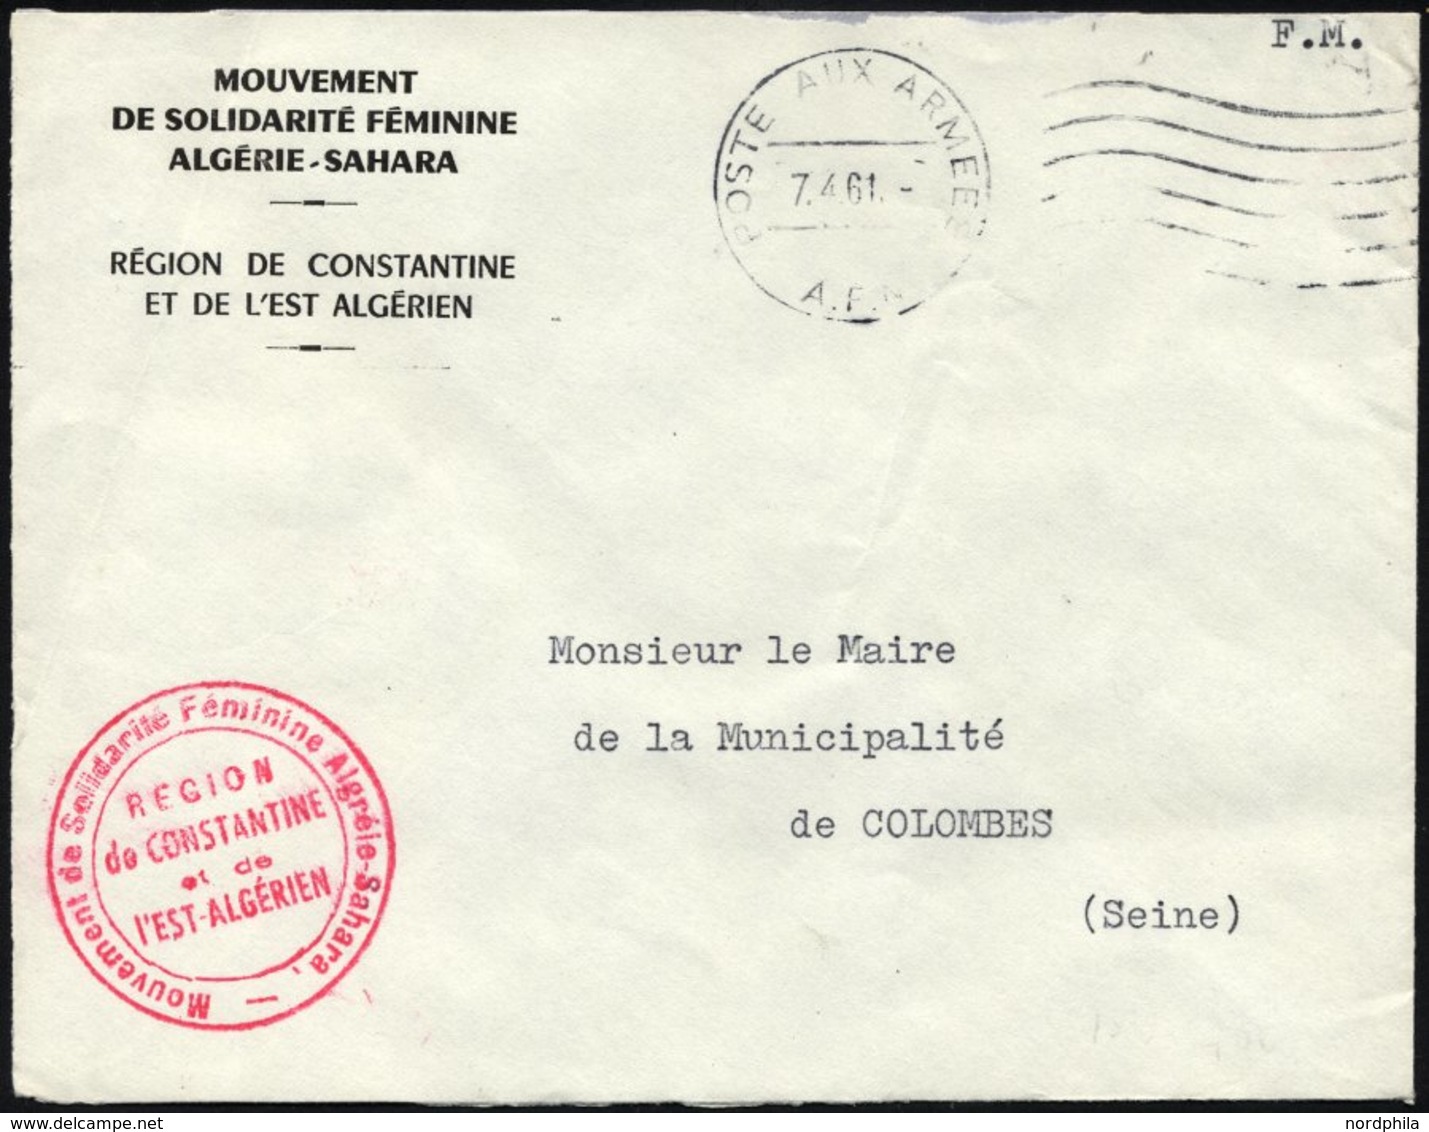 FRANKREICH FELDPOST 1961, K1 POSTE AUX ARMEES/A.F.N. Auf Armeebrief Der Frauensolidaritätsbewegung Der Sahara-Region Alg - Guerre (timbres De)